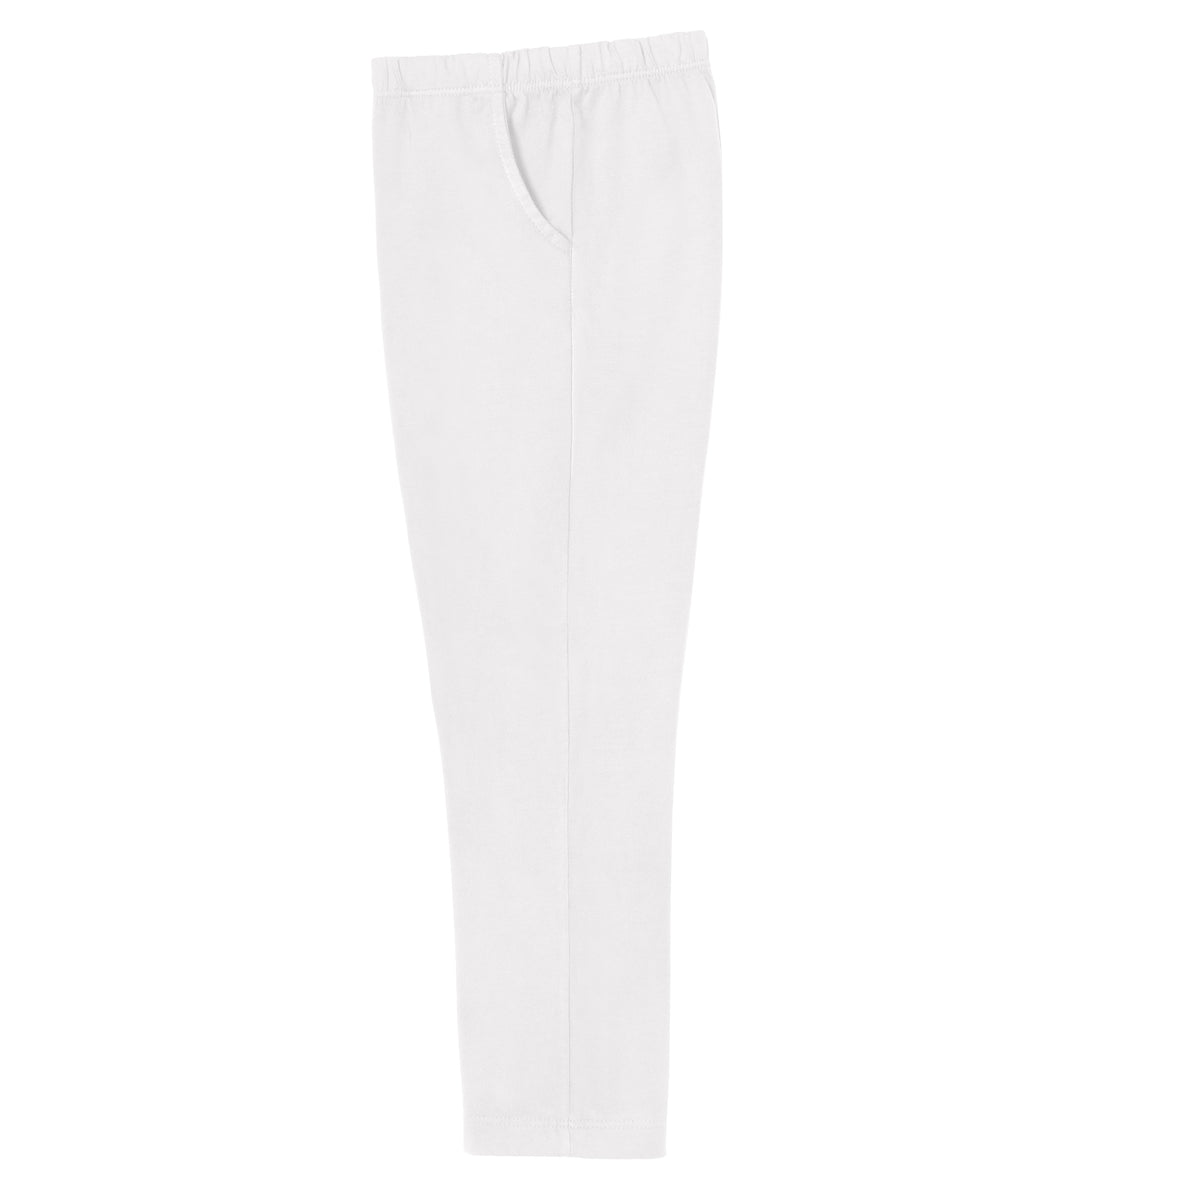 Girls Soft Cotton UPF 50+ Jersey Pocket Pants | White